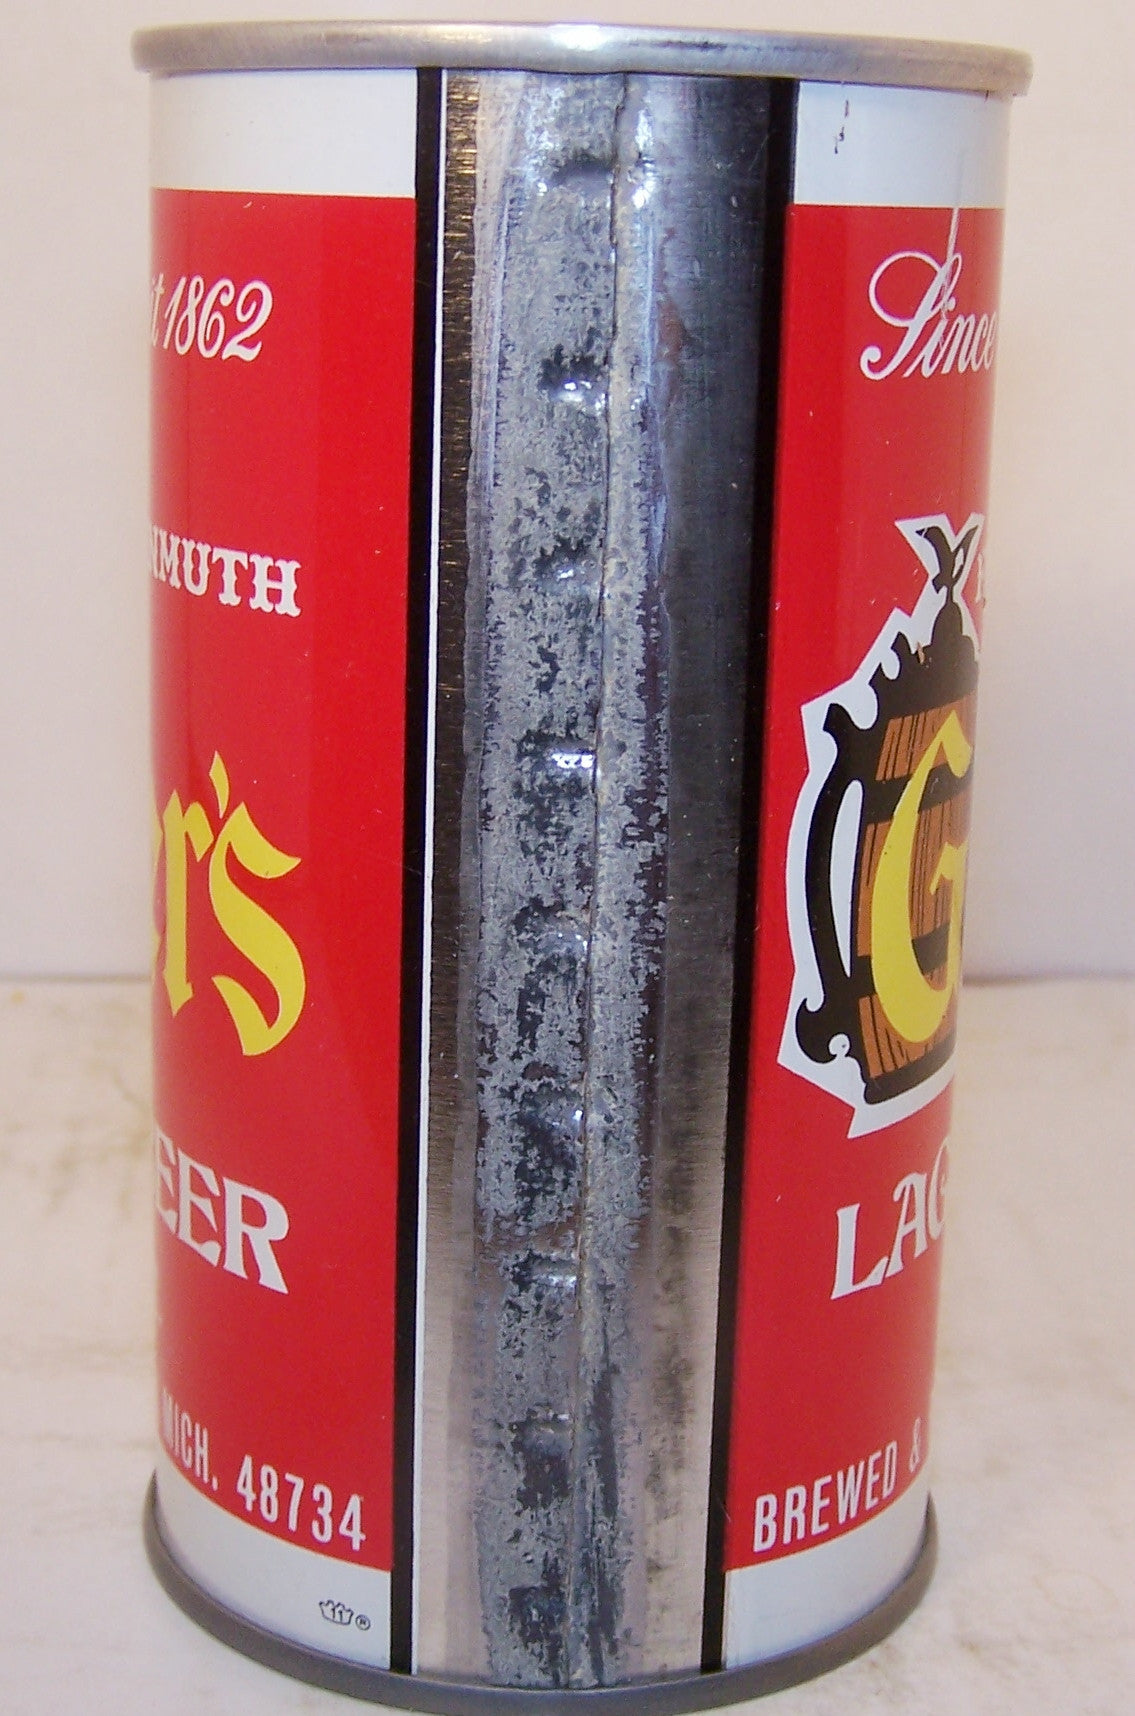 Geyer's Lager beer, USBC II 68-10 Grade 1/1+ Sold 1/16/16